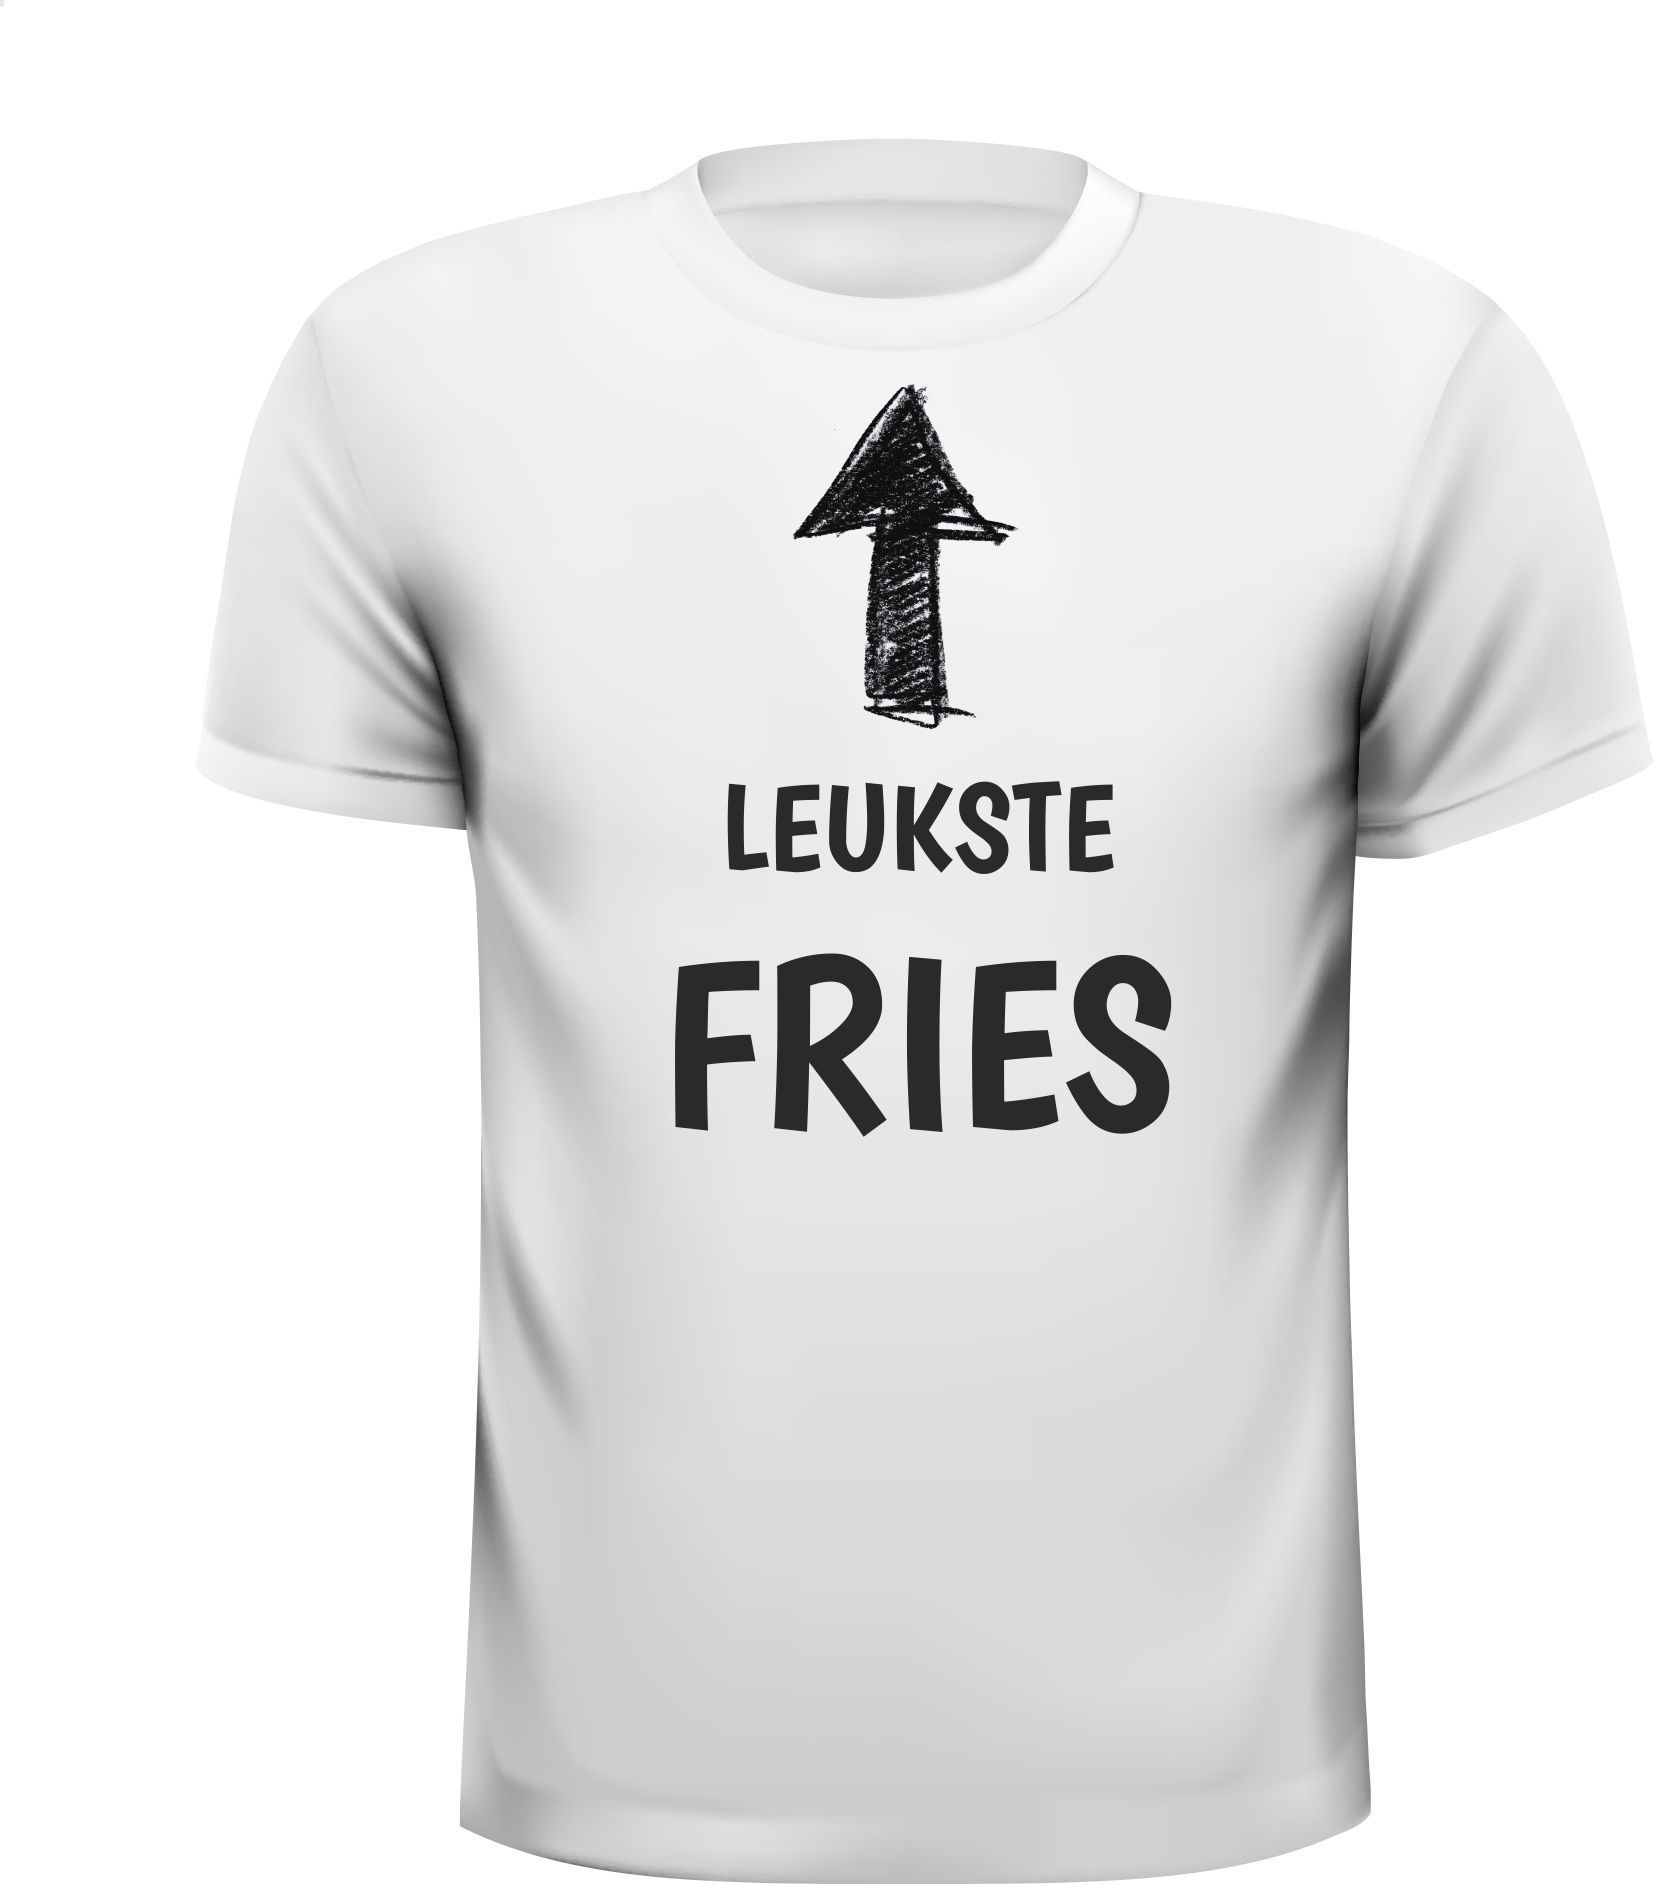 T-shirt voor de leukste Fries van Friesland